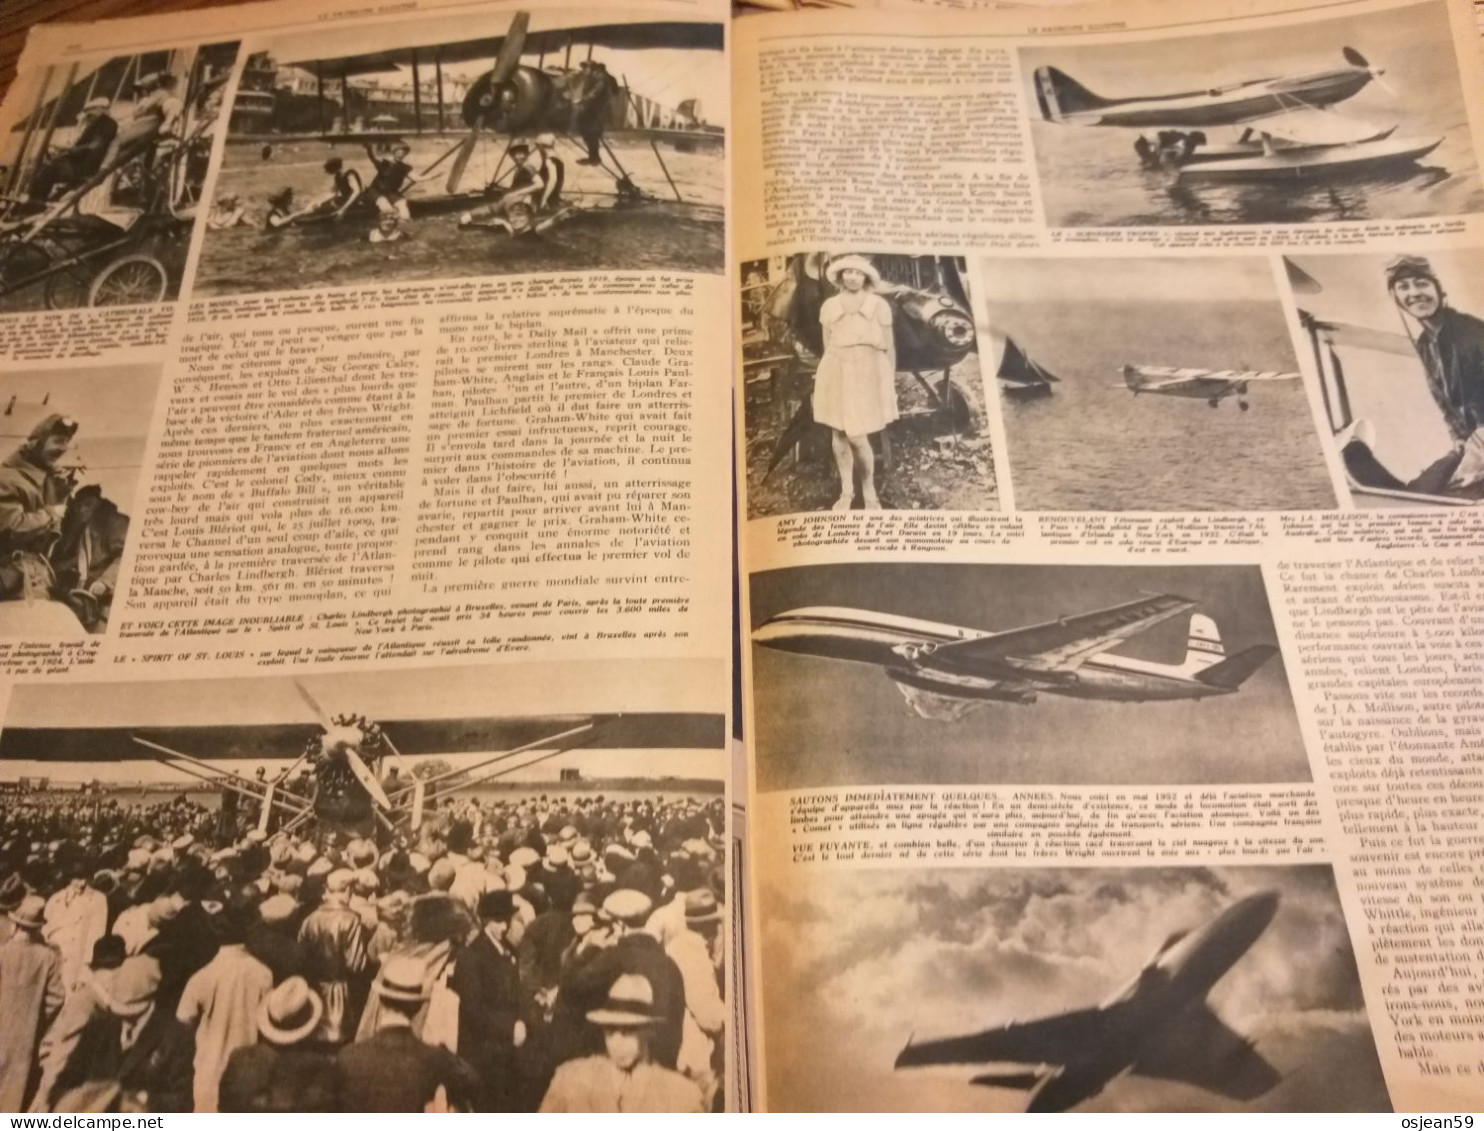 L'aviation à cinquante ans Patriote illustré 27 décembre 19553.